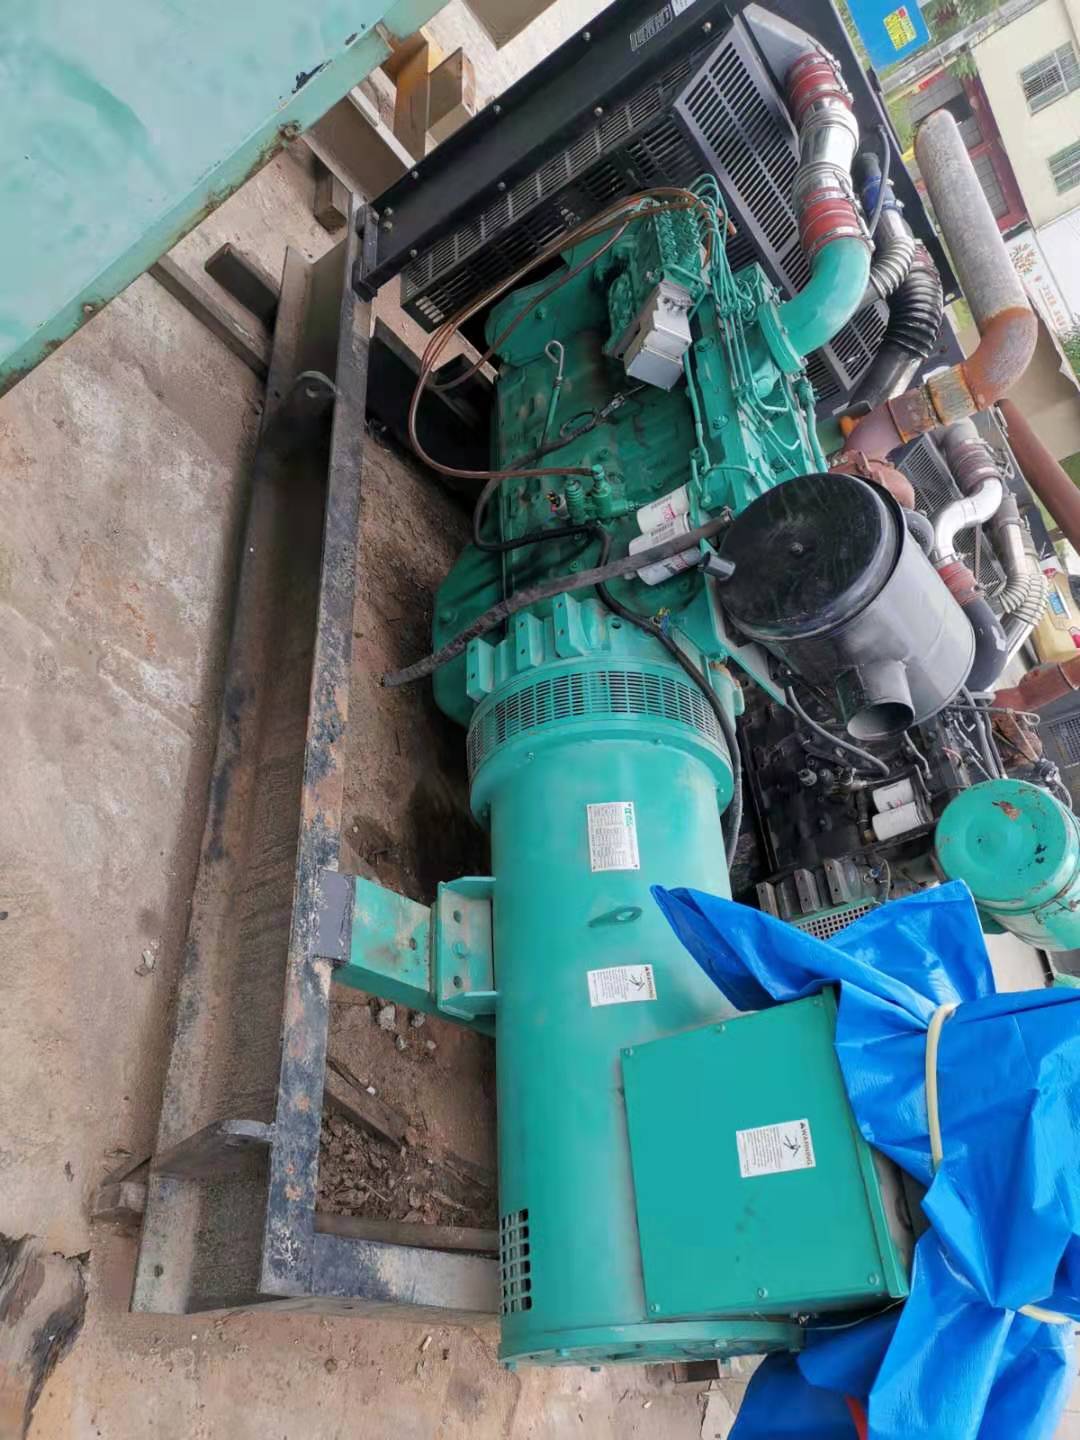 珠海尼威激光有限公司租用一台150kw柴油发电机组